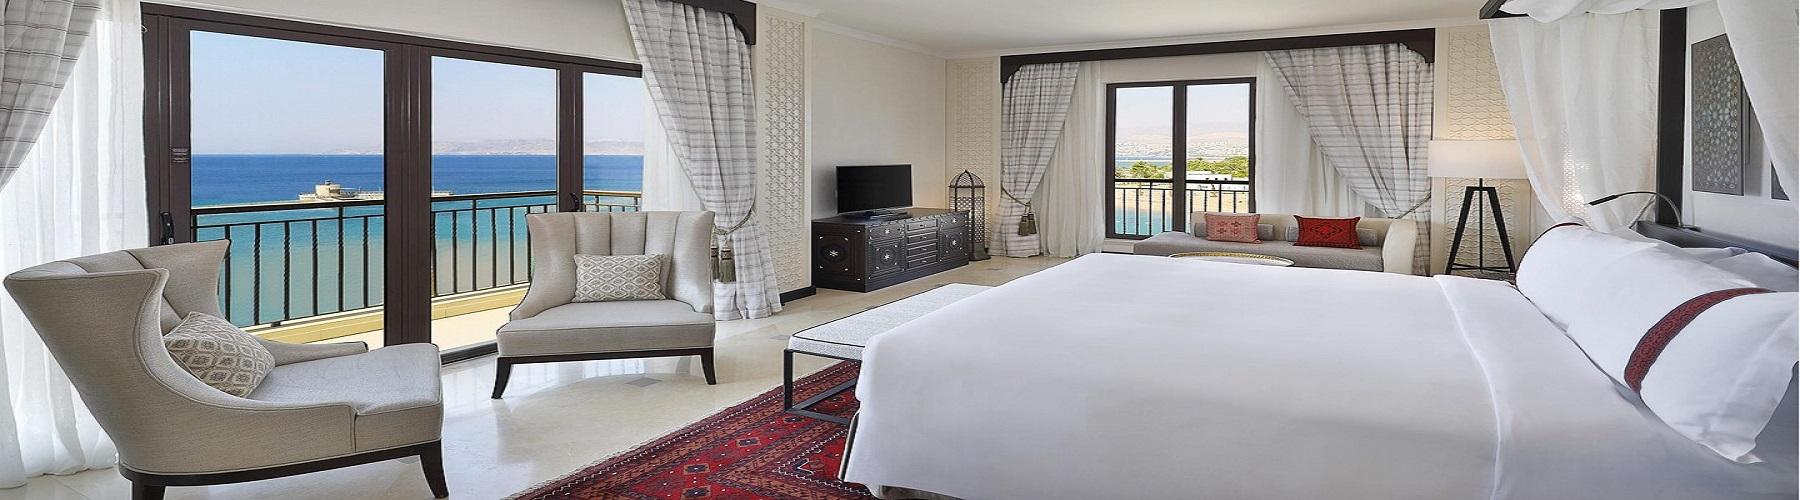 Забронировать сьют в отеле Al Manara, A Luxury Collection Hotel